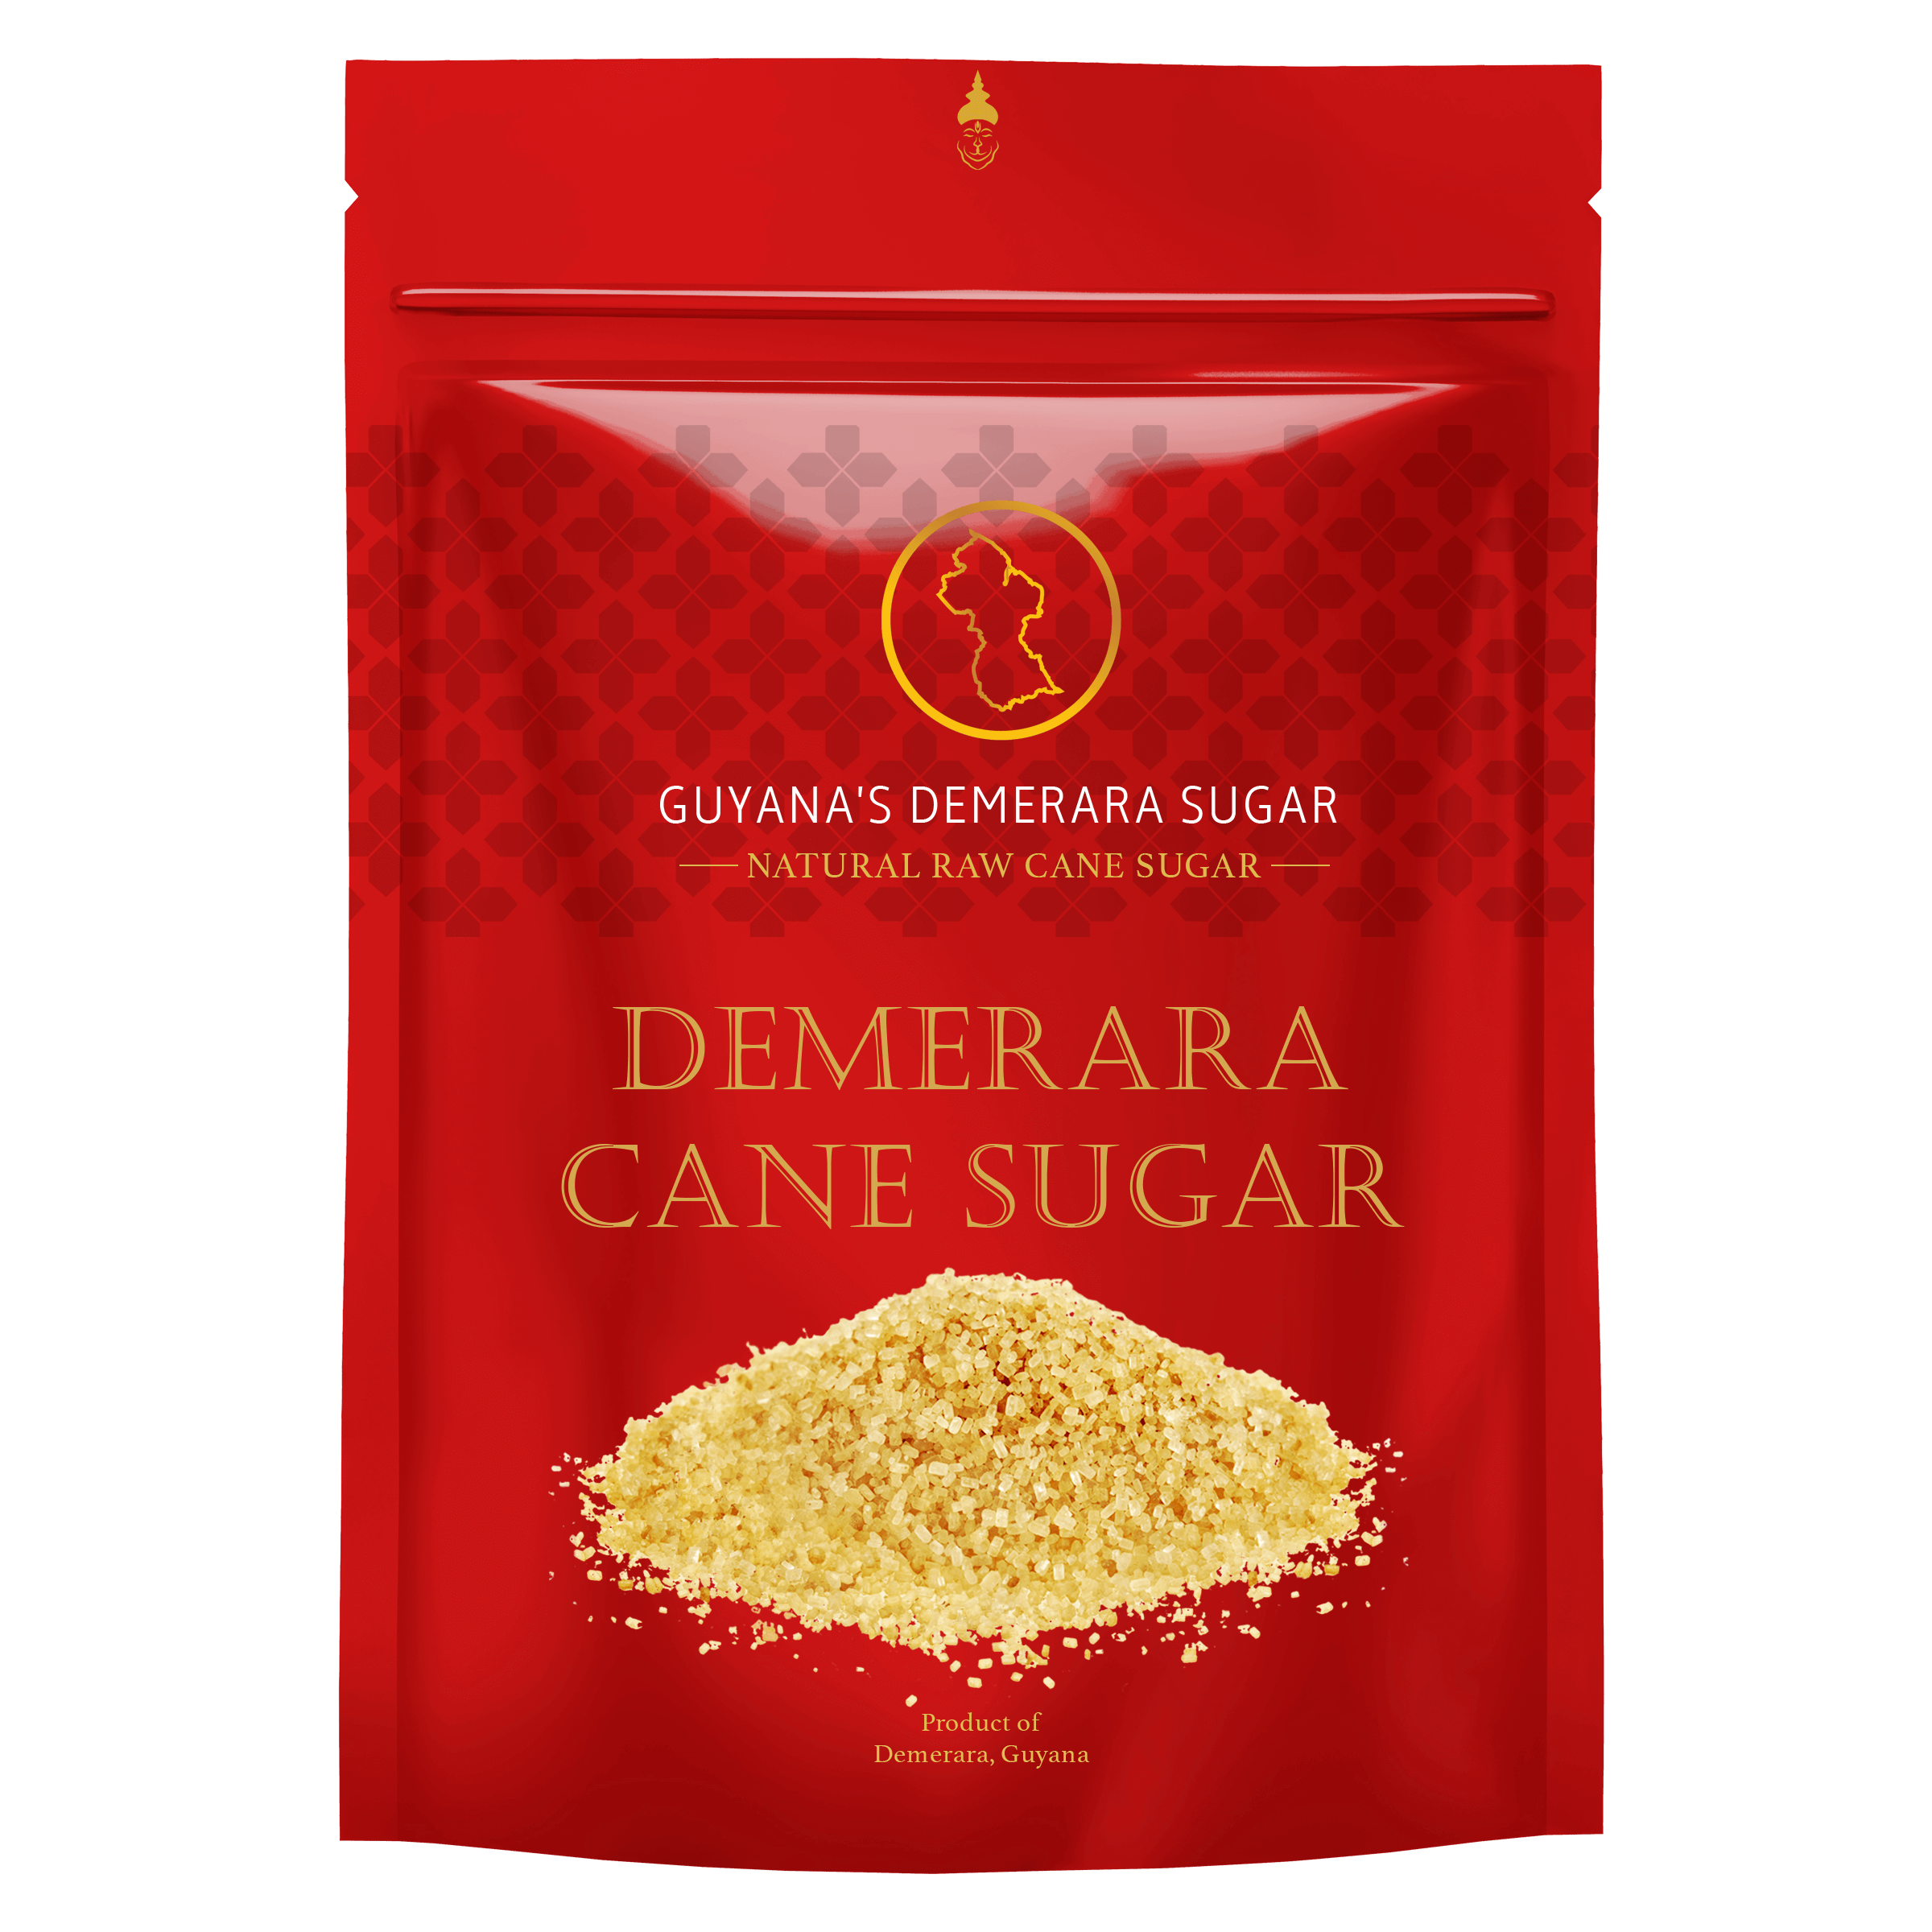 Demerara Cane Sugar - The Demerara Cane